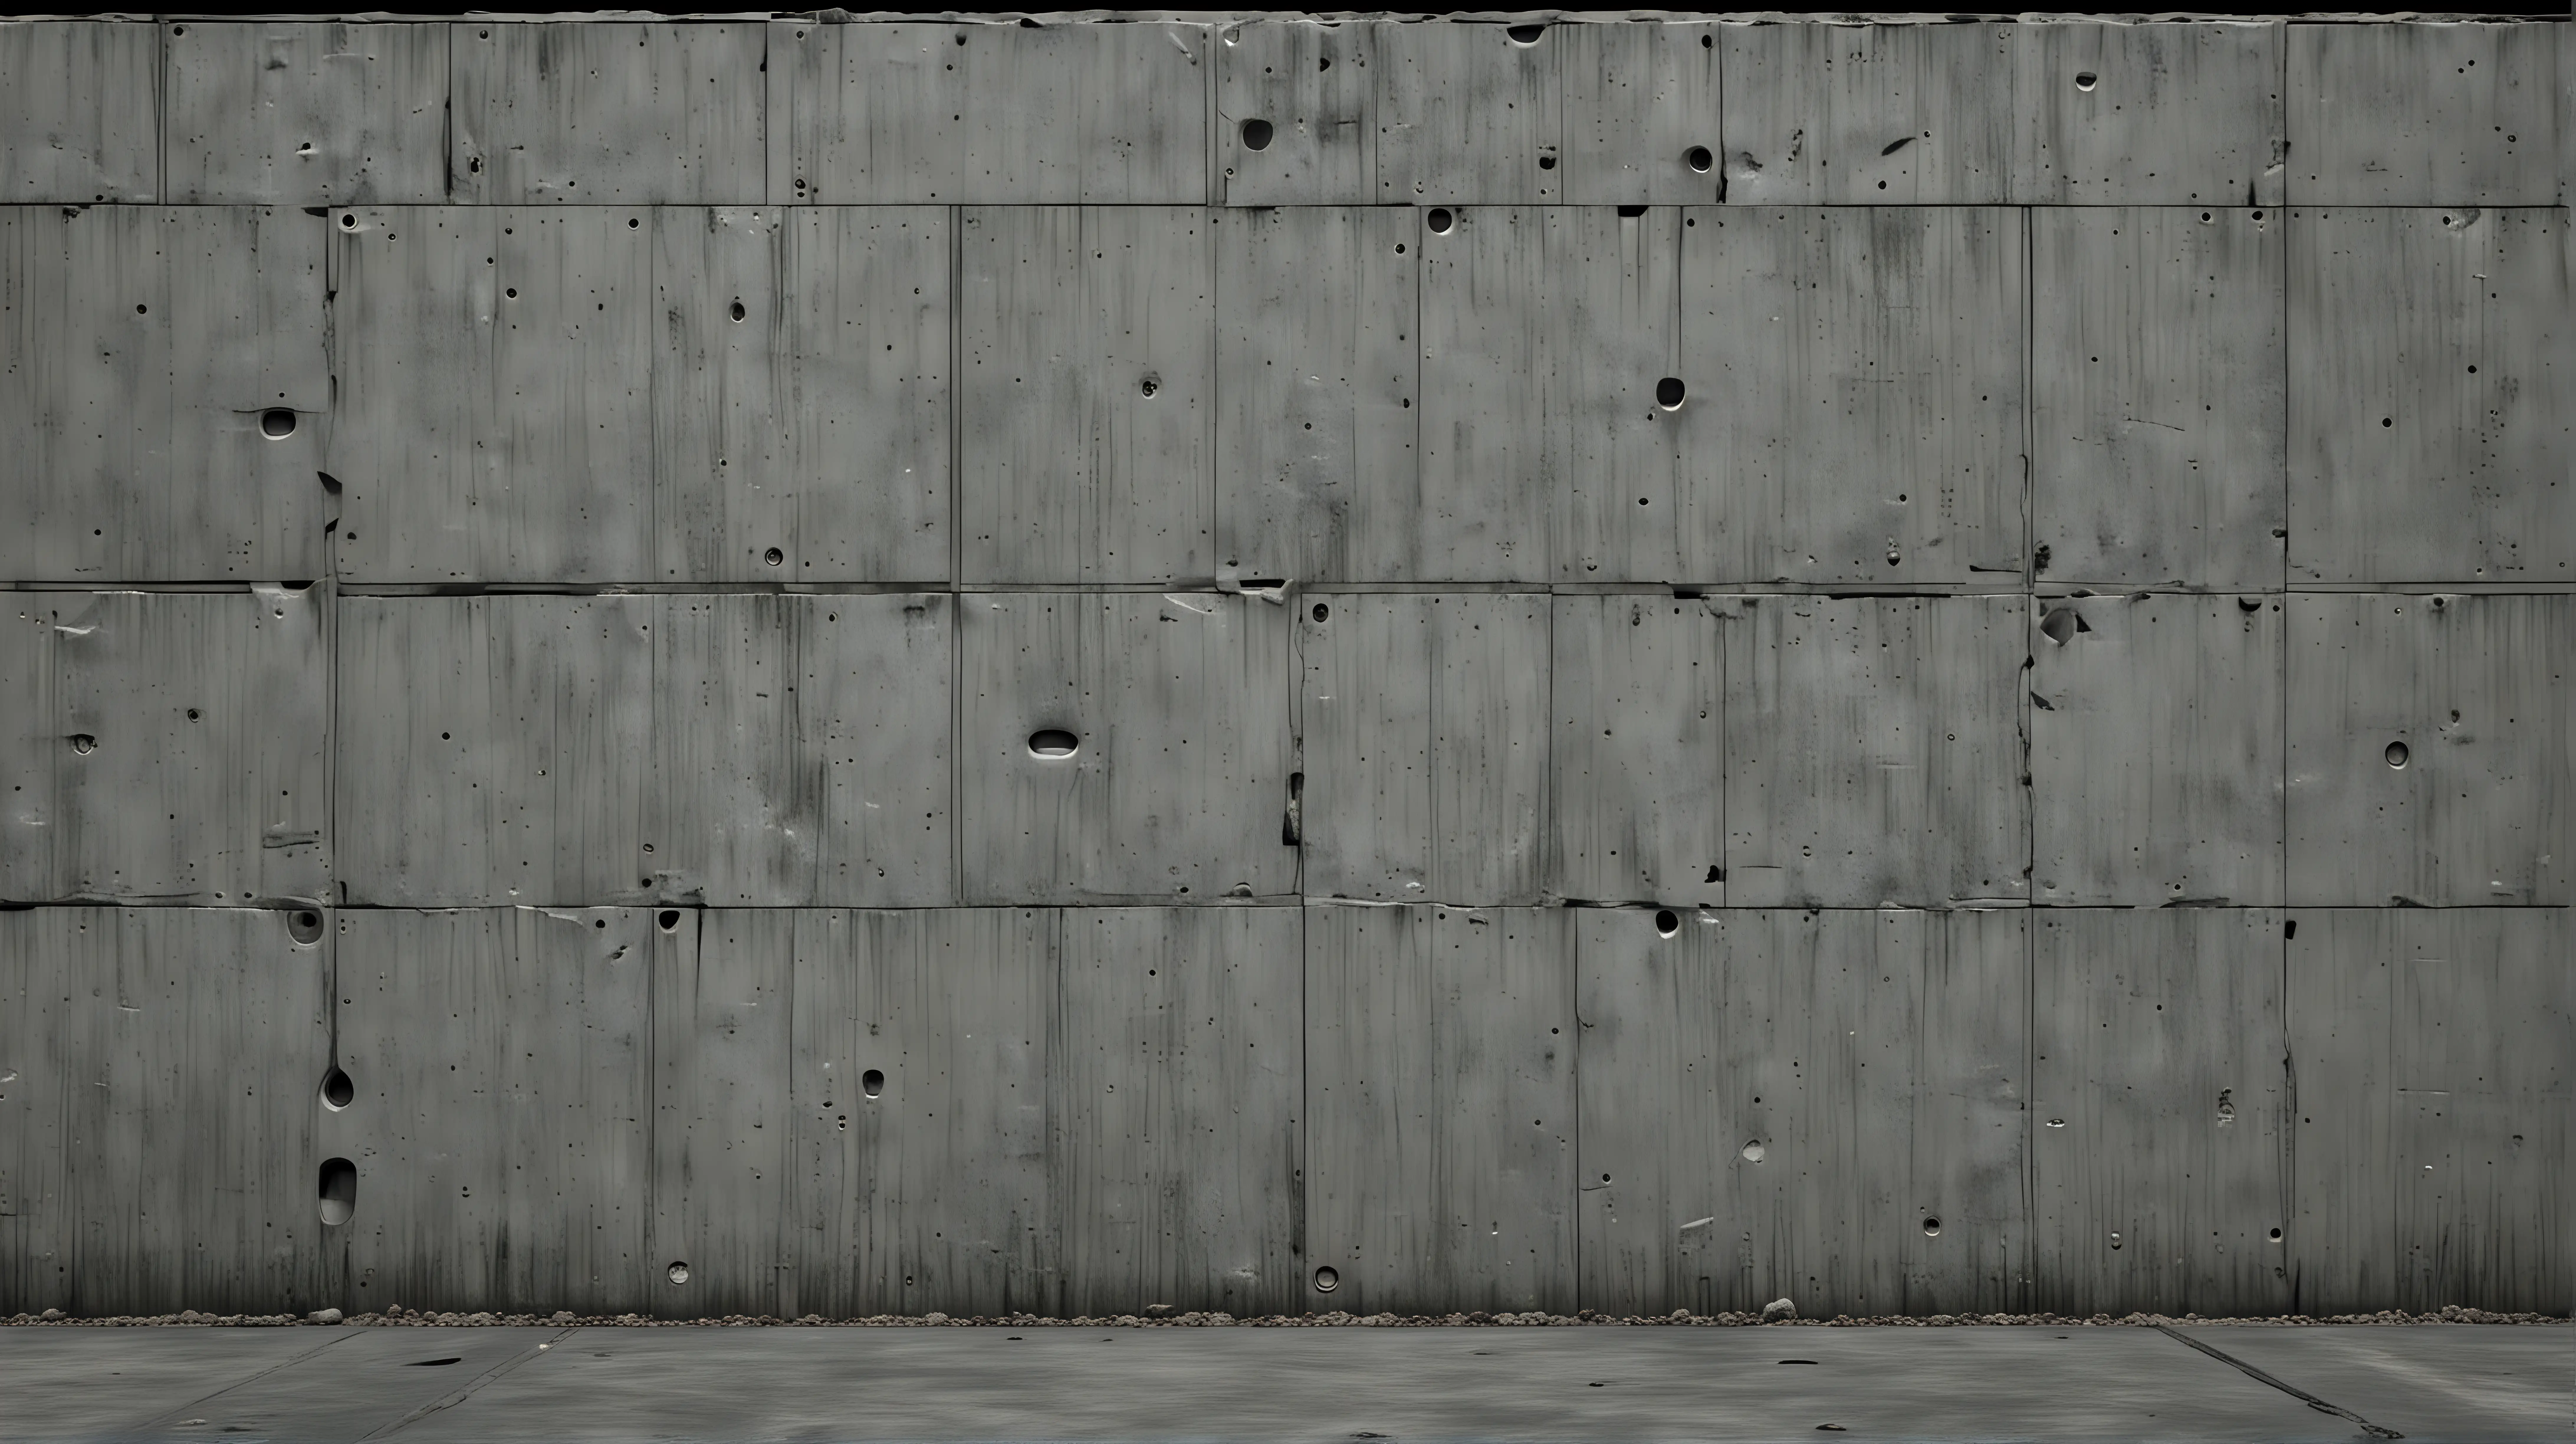 sci fi wall, concrete

